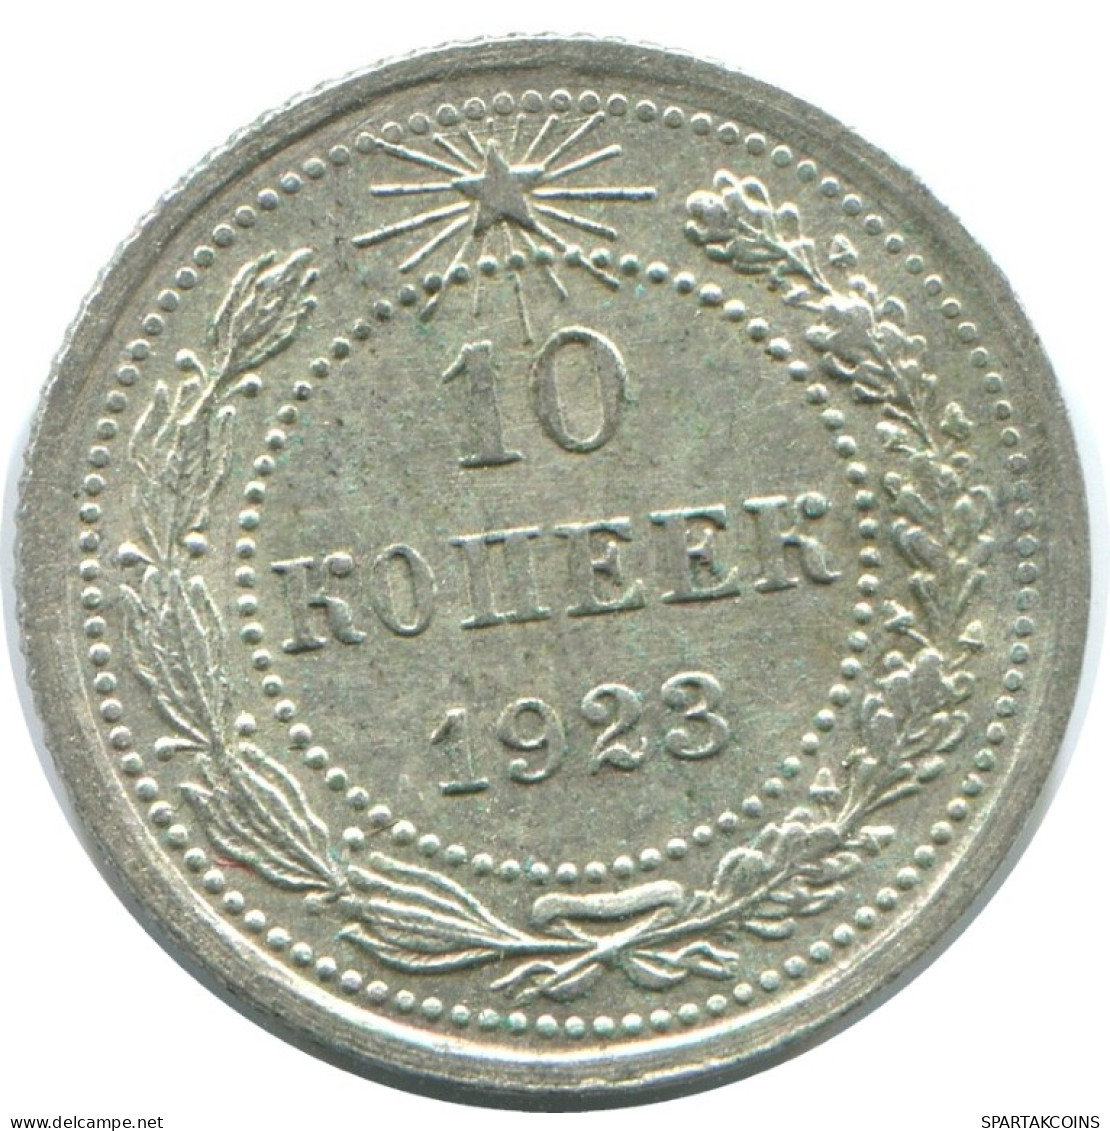 10 KOPEKS 1923 RUSSLAND RUSSIA RSFSR SILBER Münze HIGH GRADE #AE906.4.D.A - Russland